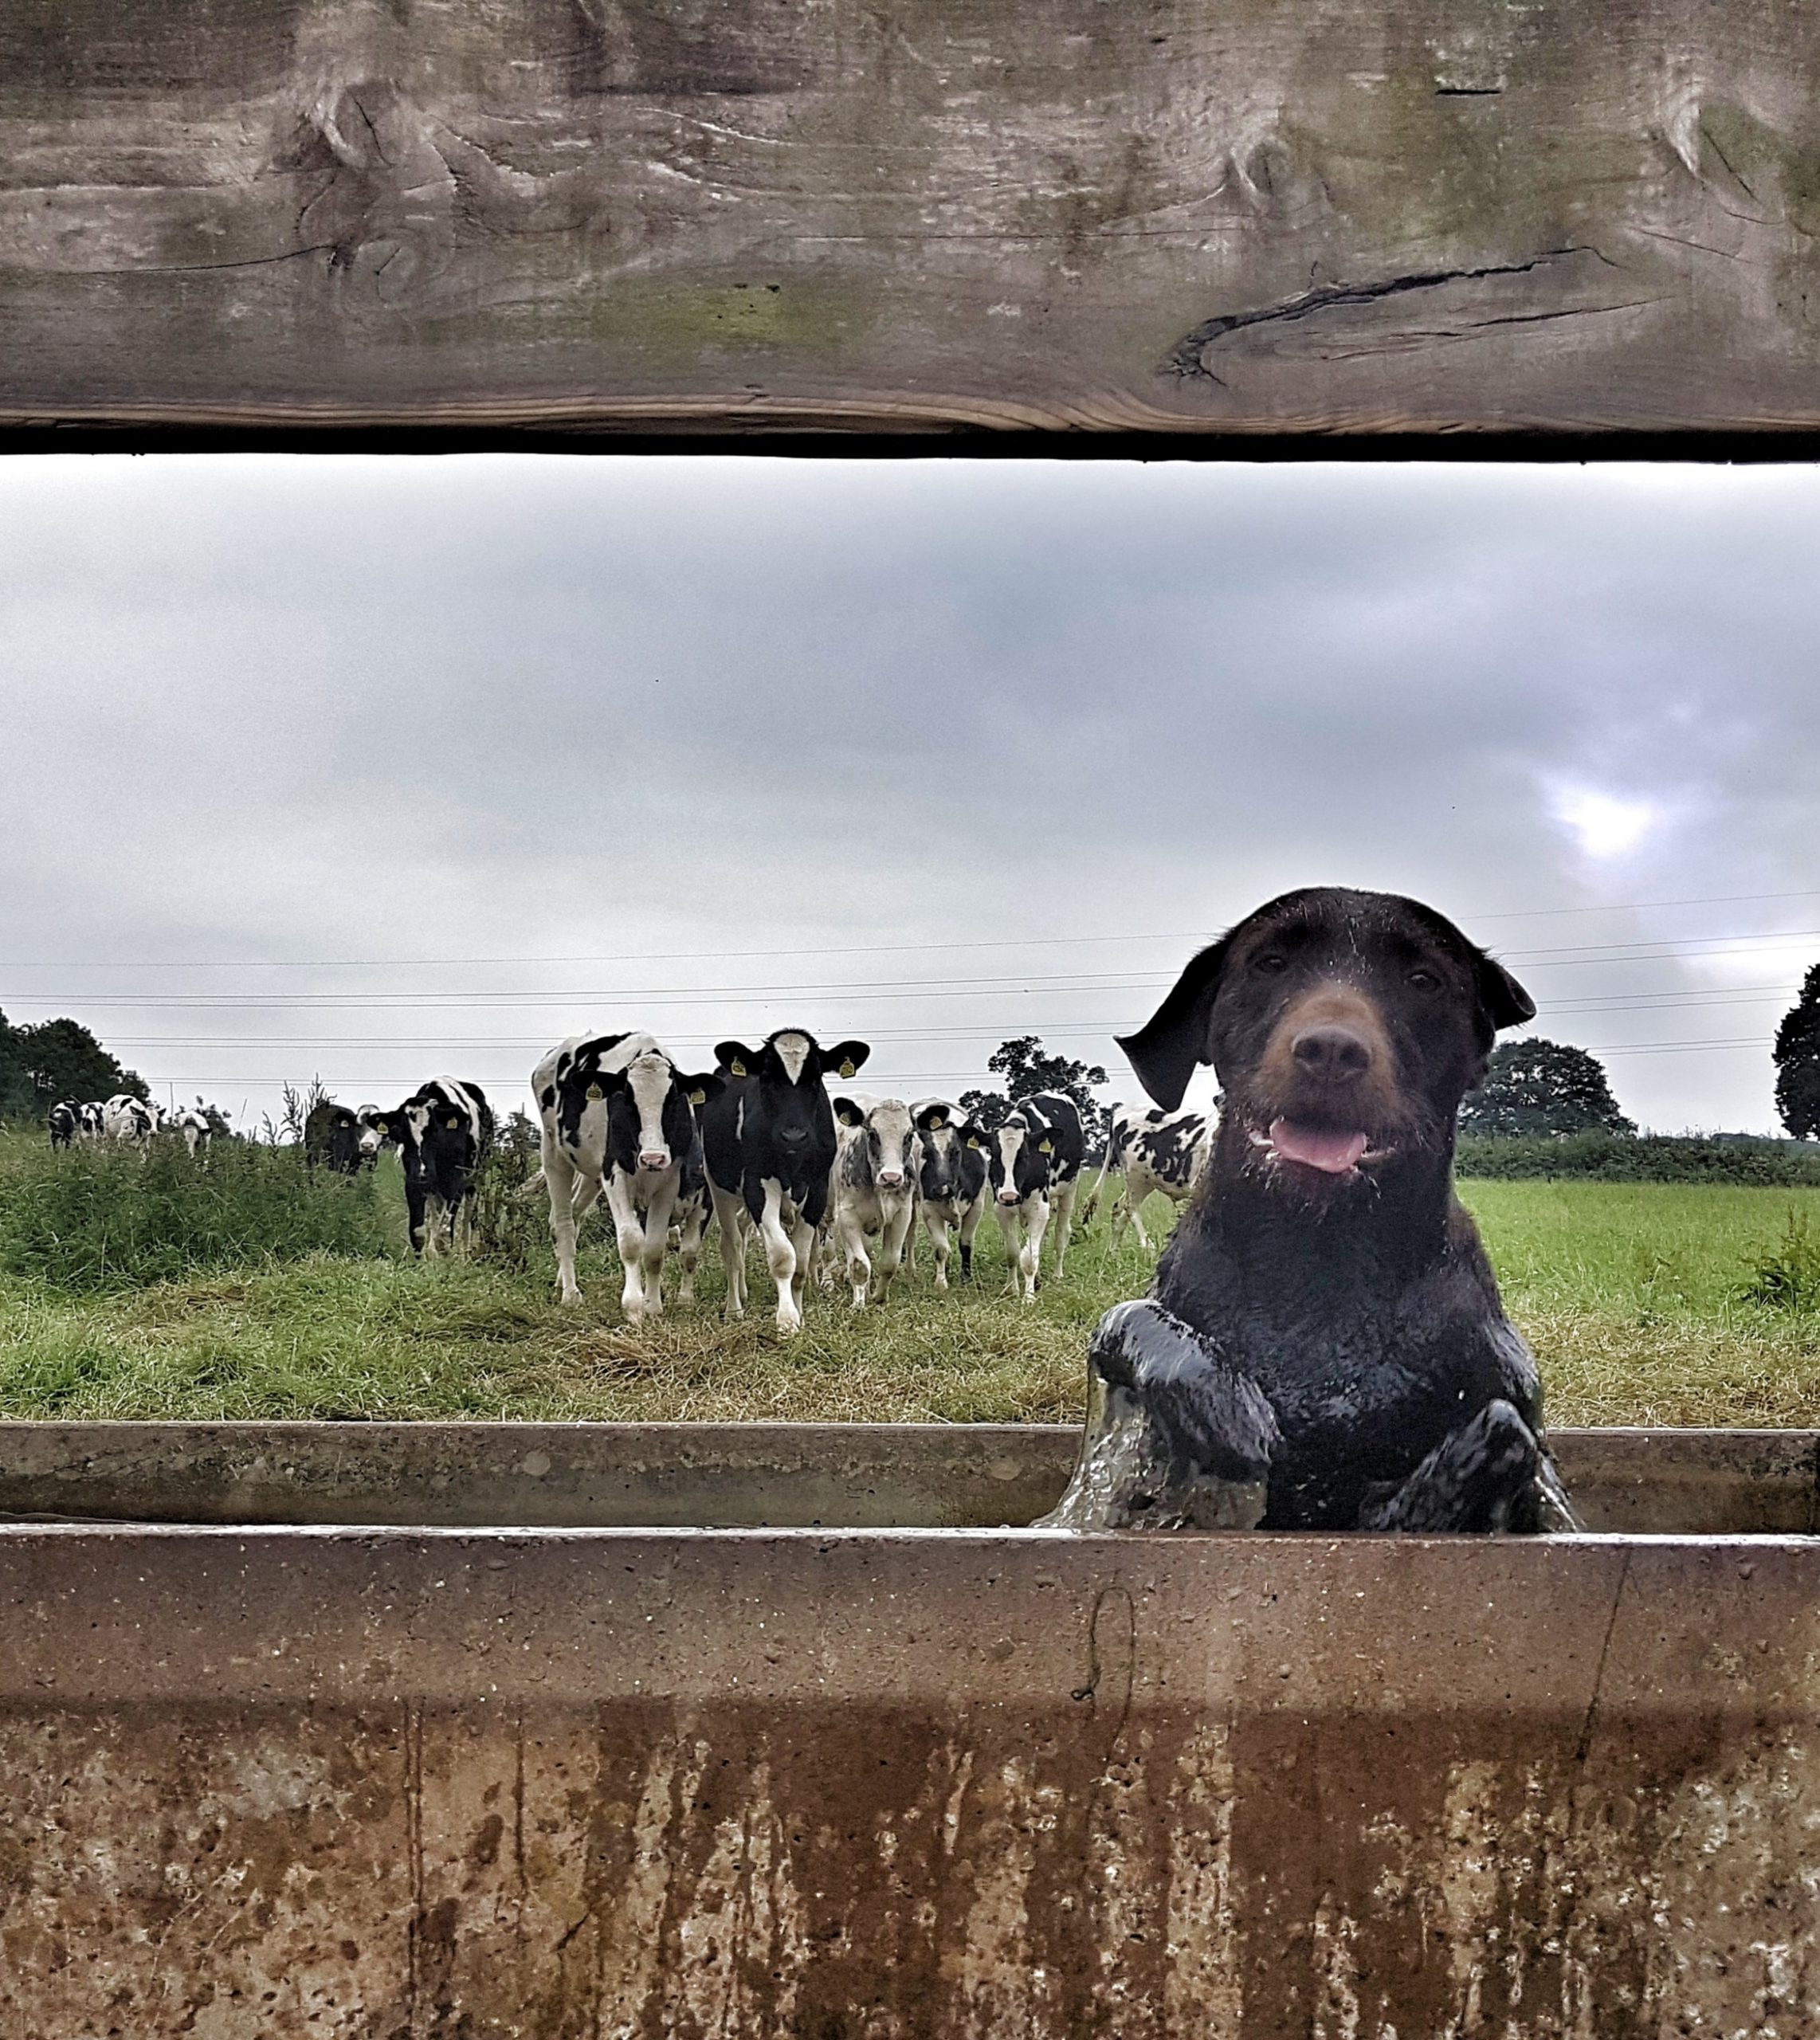 Fotografija 'Matilda fleeing the cows' fotografkinje Emme Watson snimljena u Somerset fieldu u SAD-u.